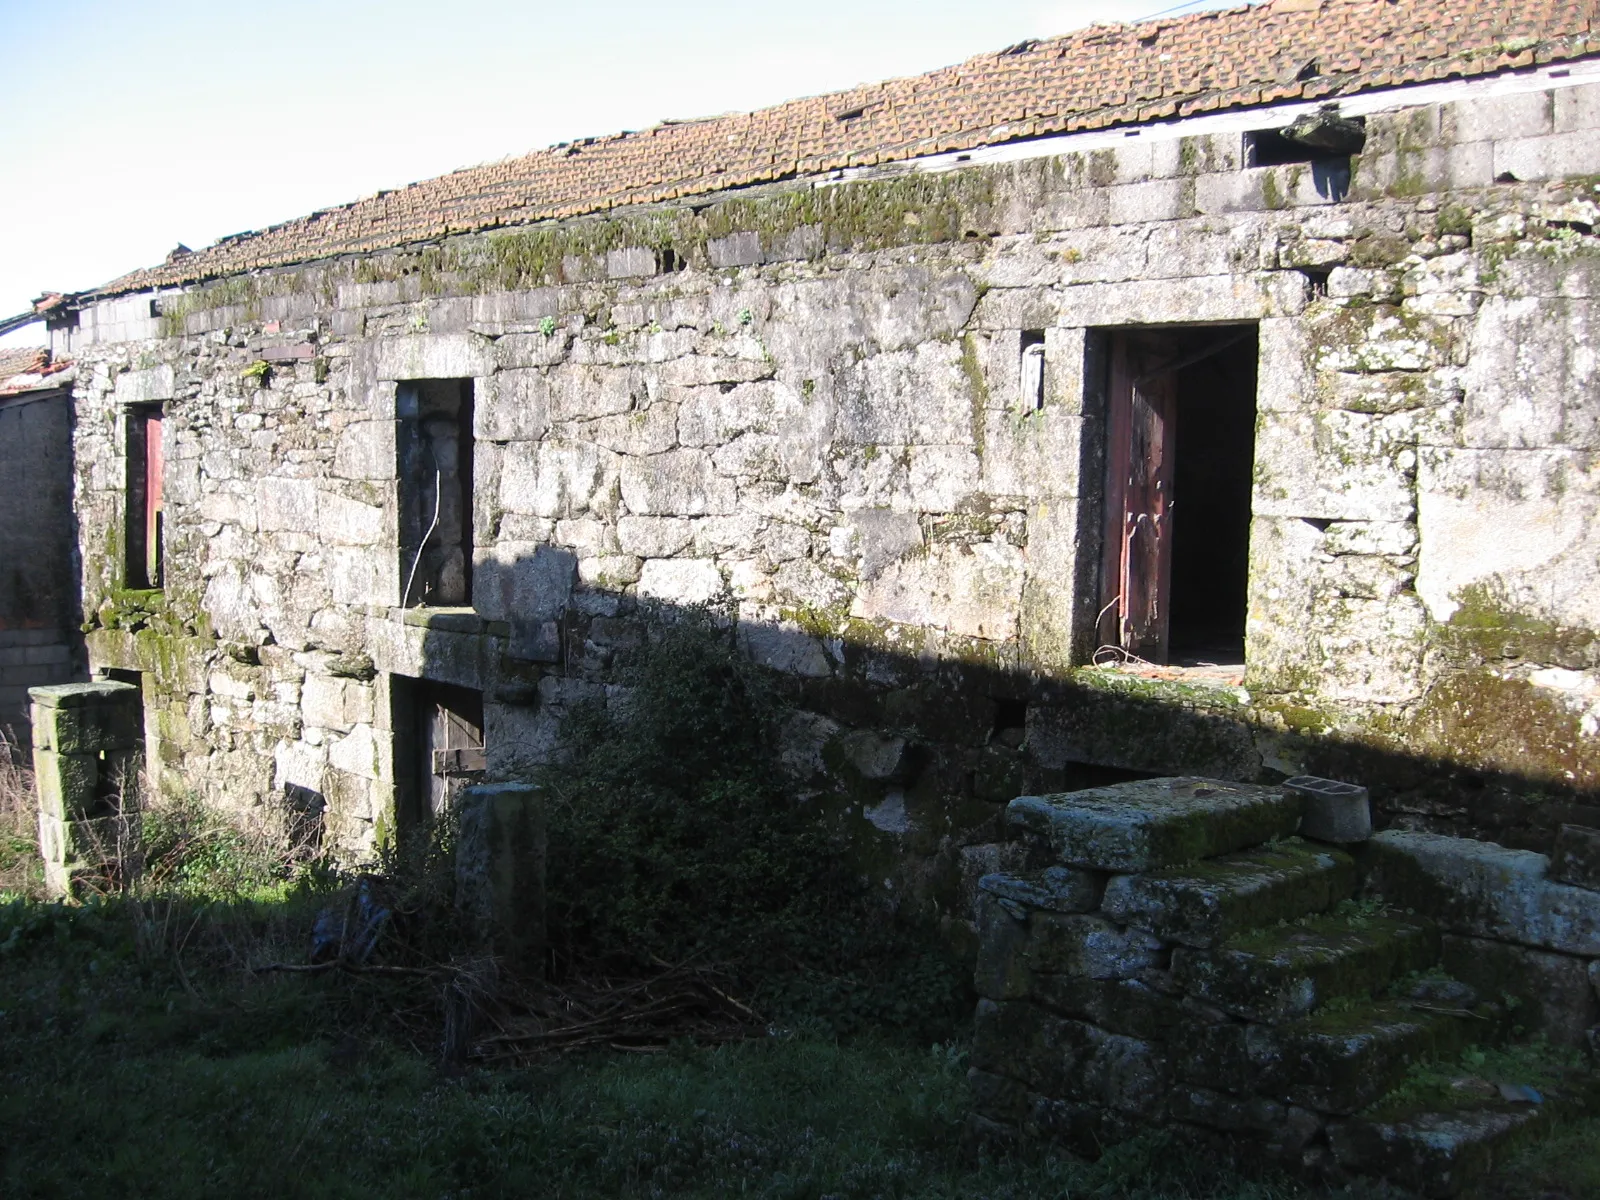 Photo showing: Casa construída sobre a fronteira anterior a 1864. A porta da direita estaria em antigo território espanhol, Soutelinho da Raia, Chaves, Portugal.